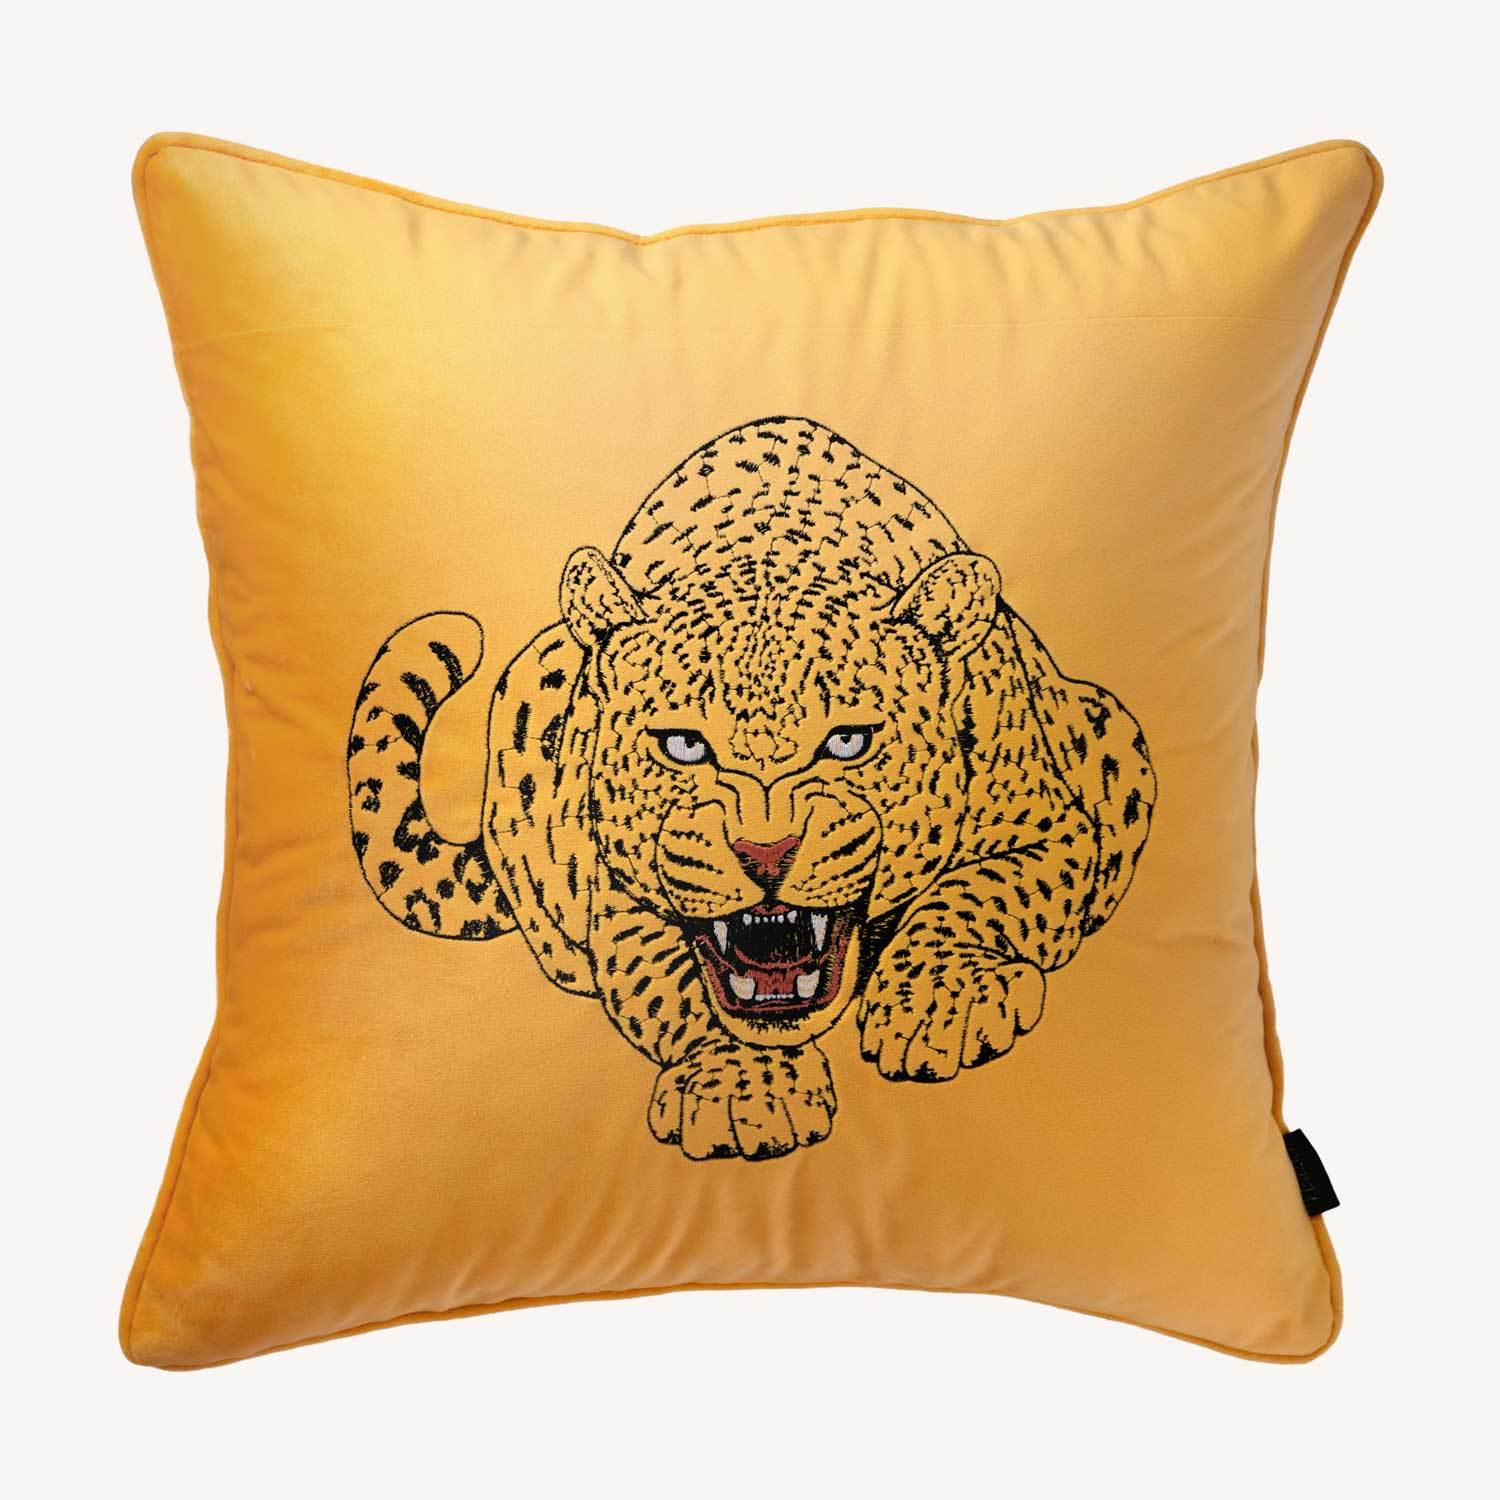 gult kuddfodral i sammet med motiv på en leopard och storlek 45x45cm